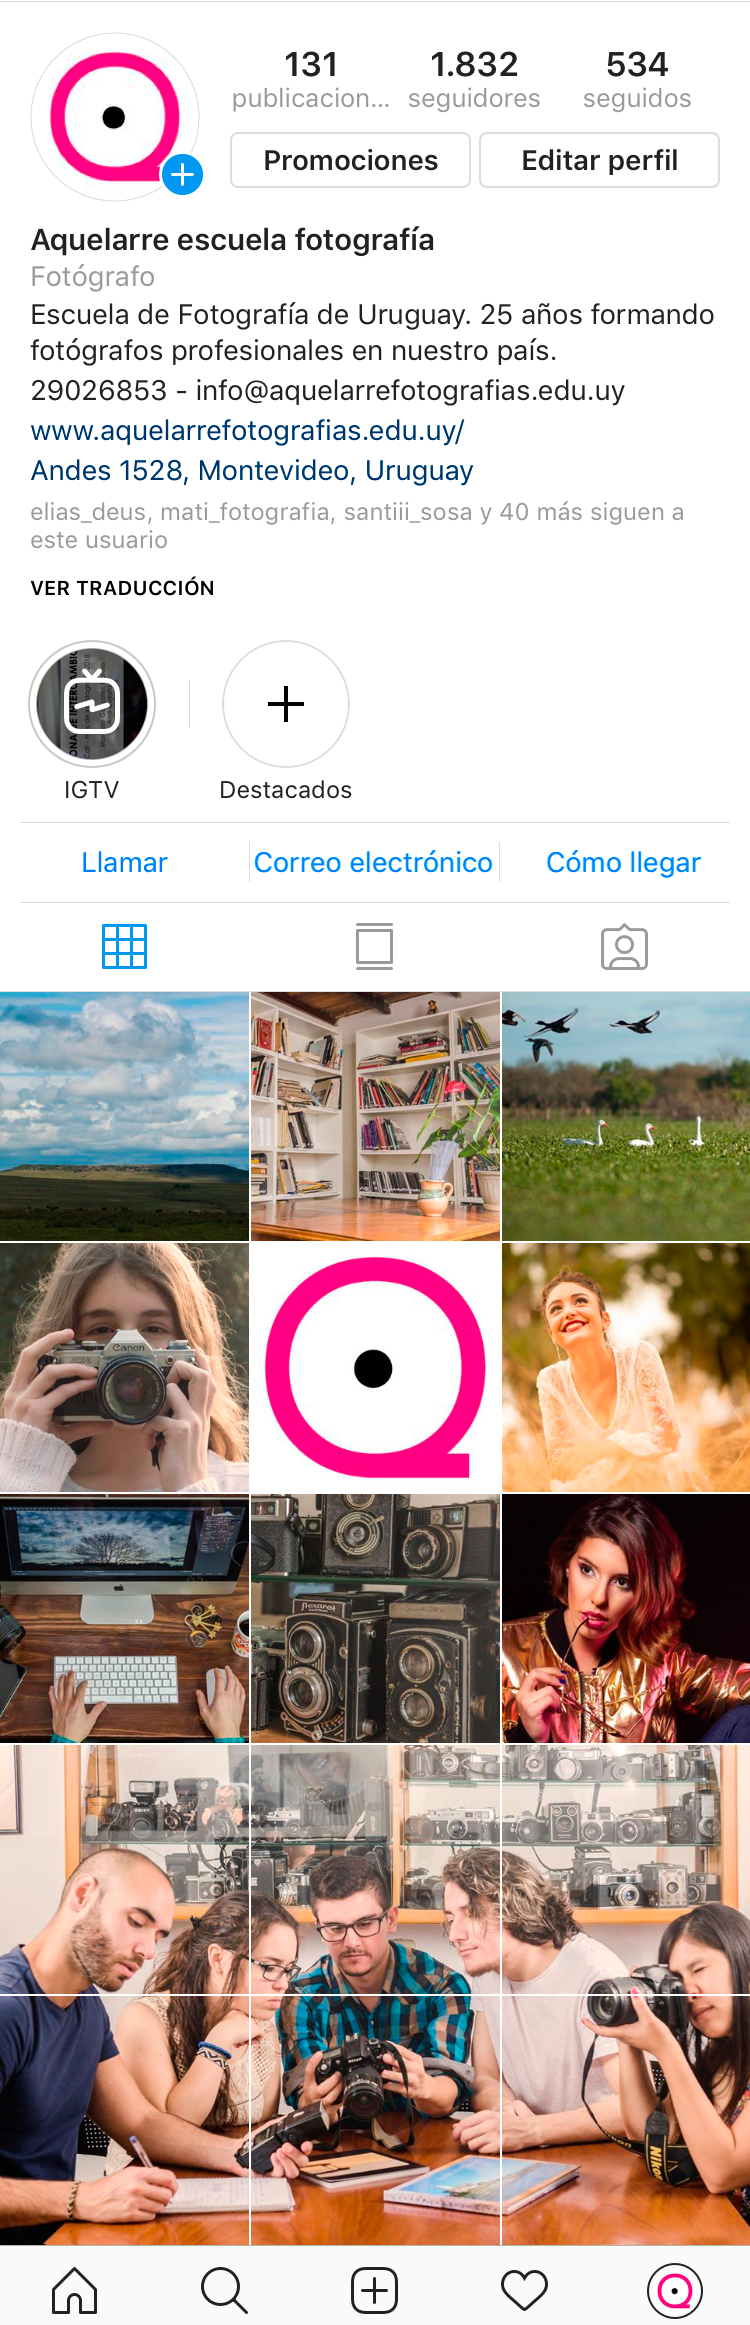 Fotografía para redes sociales: Lifestyle branding en Instagram 1